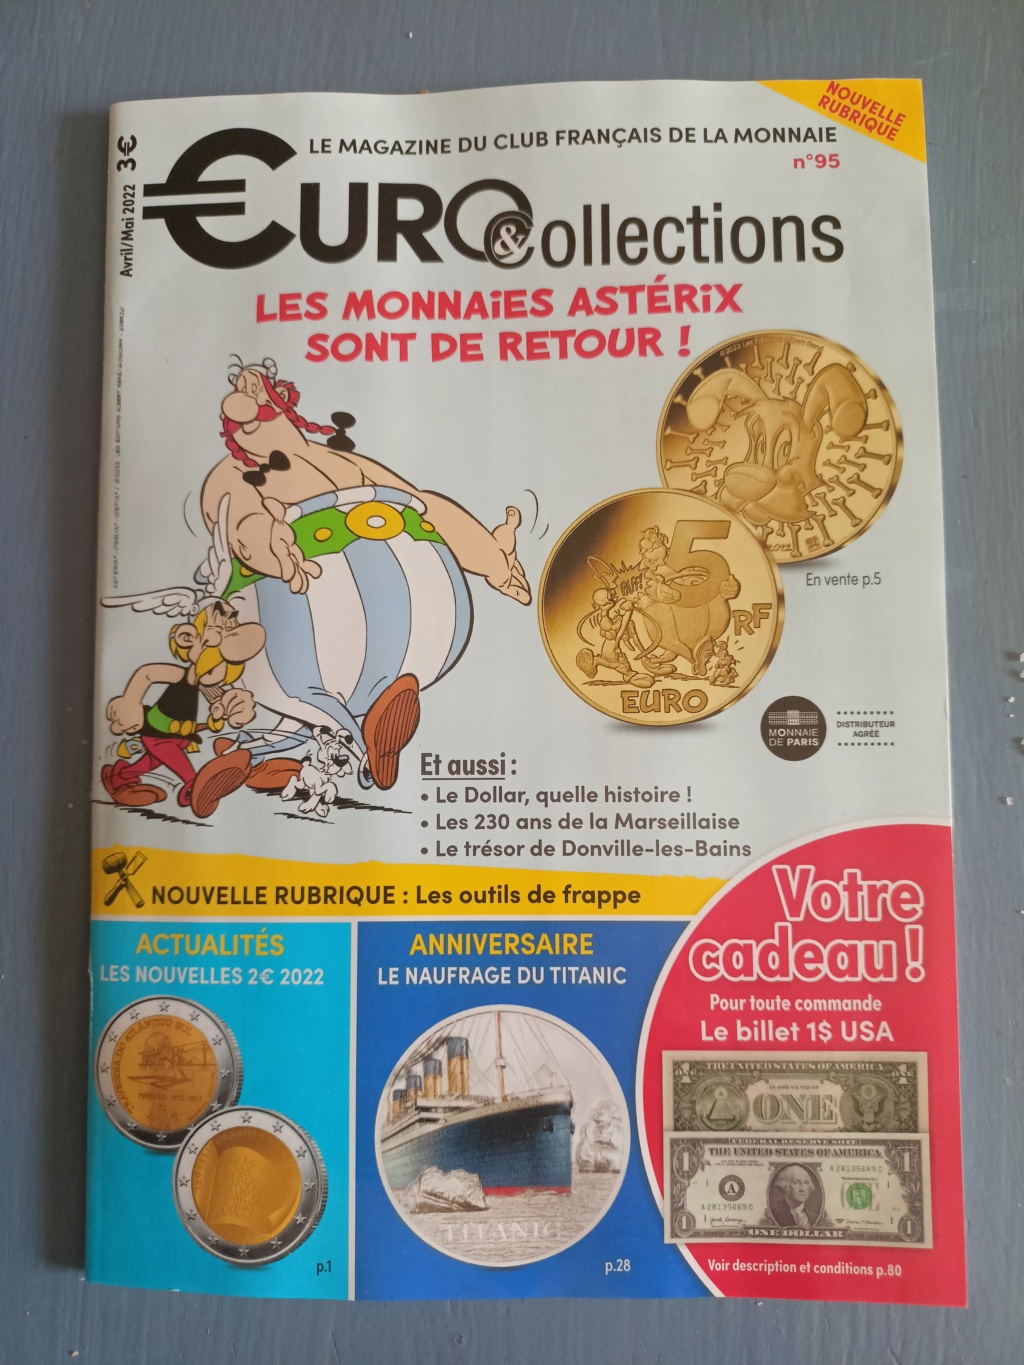 Collectionnez les 12 mini-médailles exclusives avec Astérix:  Monnaie de Paris - Page 2 Img20237